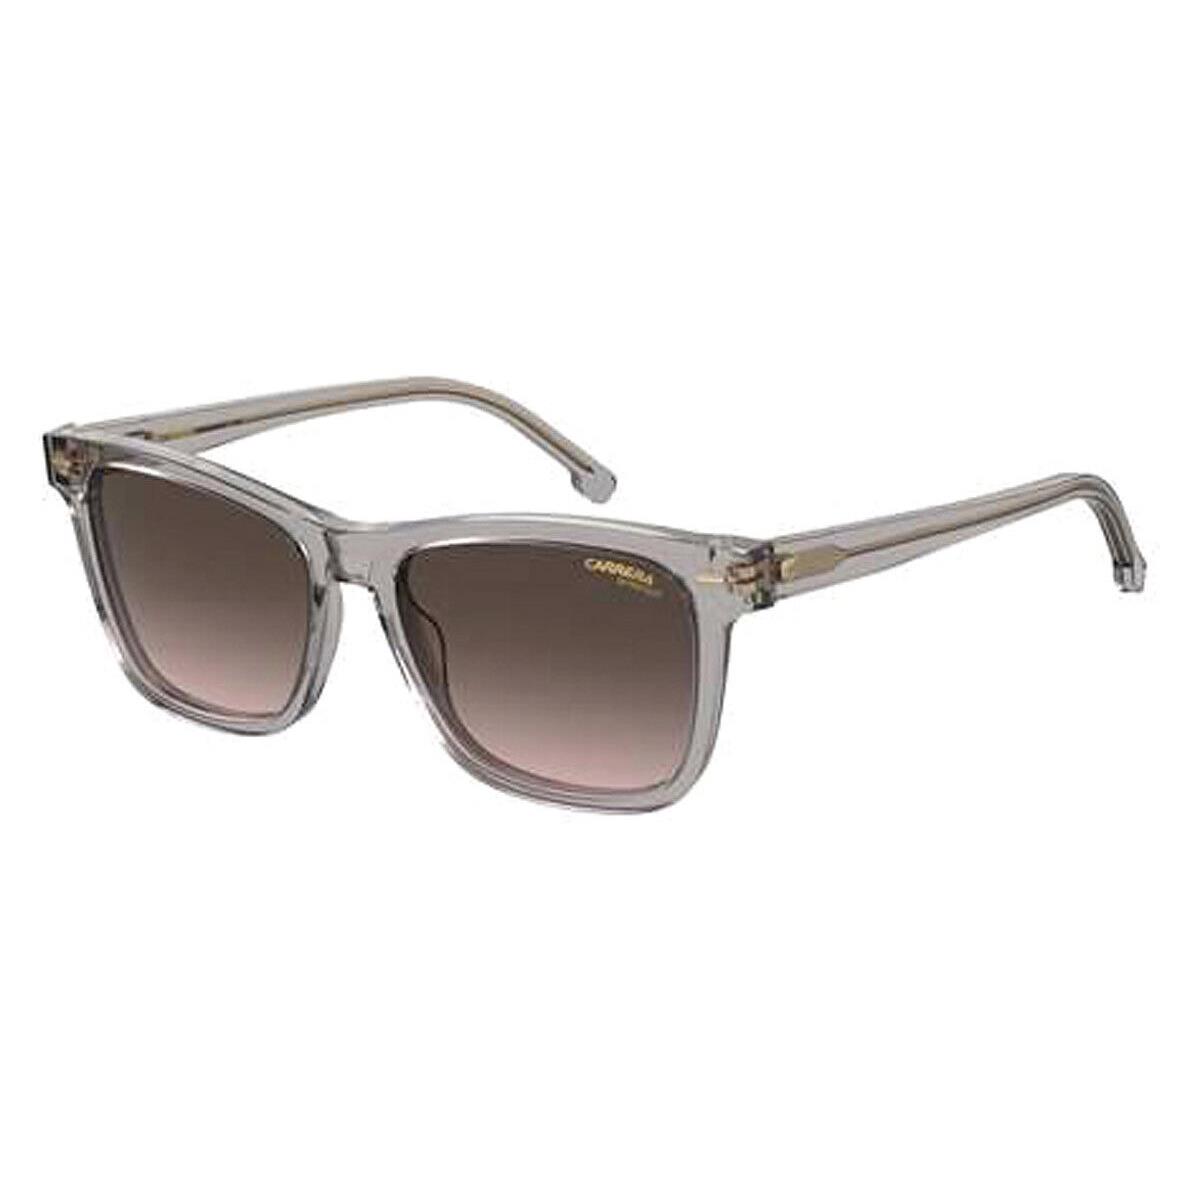 Carrera Car Sunglasses Women Gray / Brown Gradient 54mm